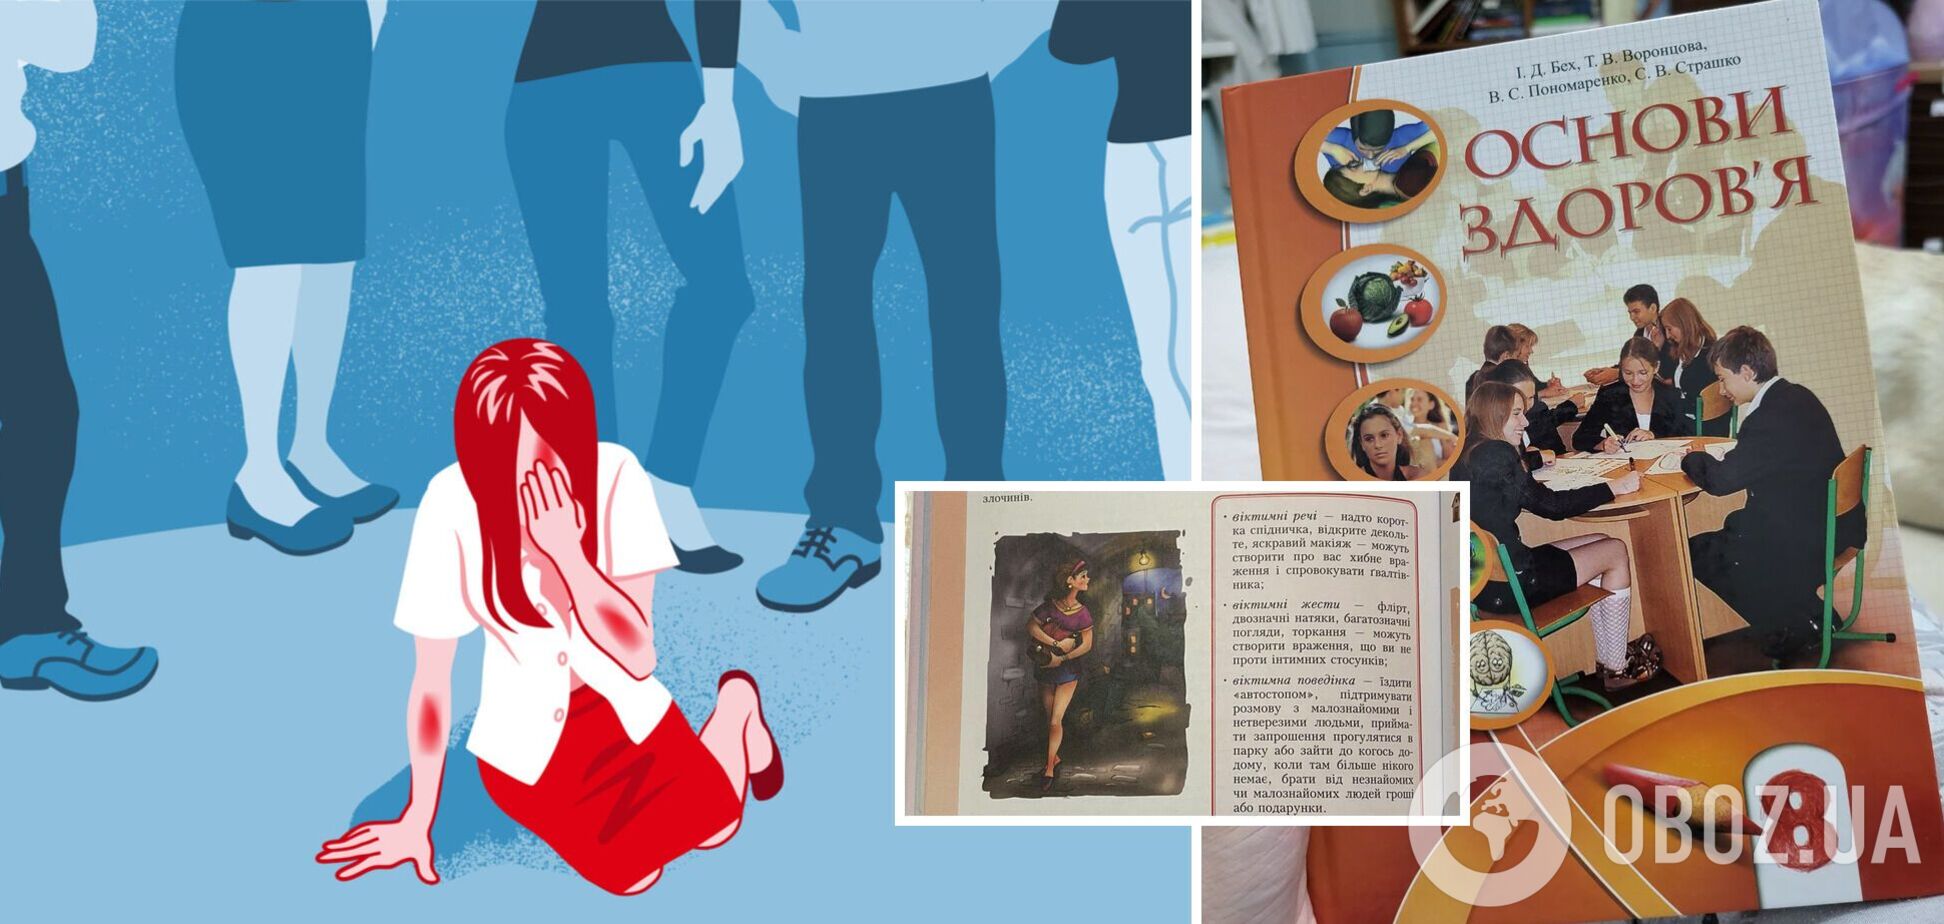 Изнасилование из-за короткой юбки и каблуков? Украинцы возмутились из-за учебника 'Основы здоровья' для 8-го класса. Фото